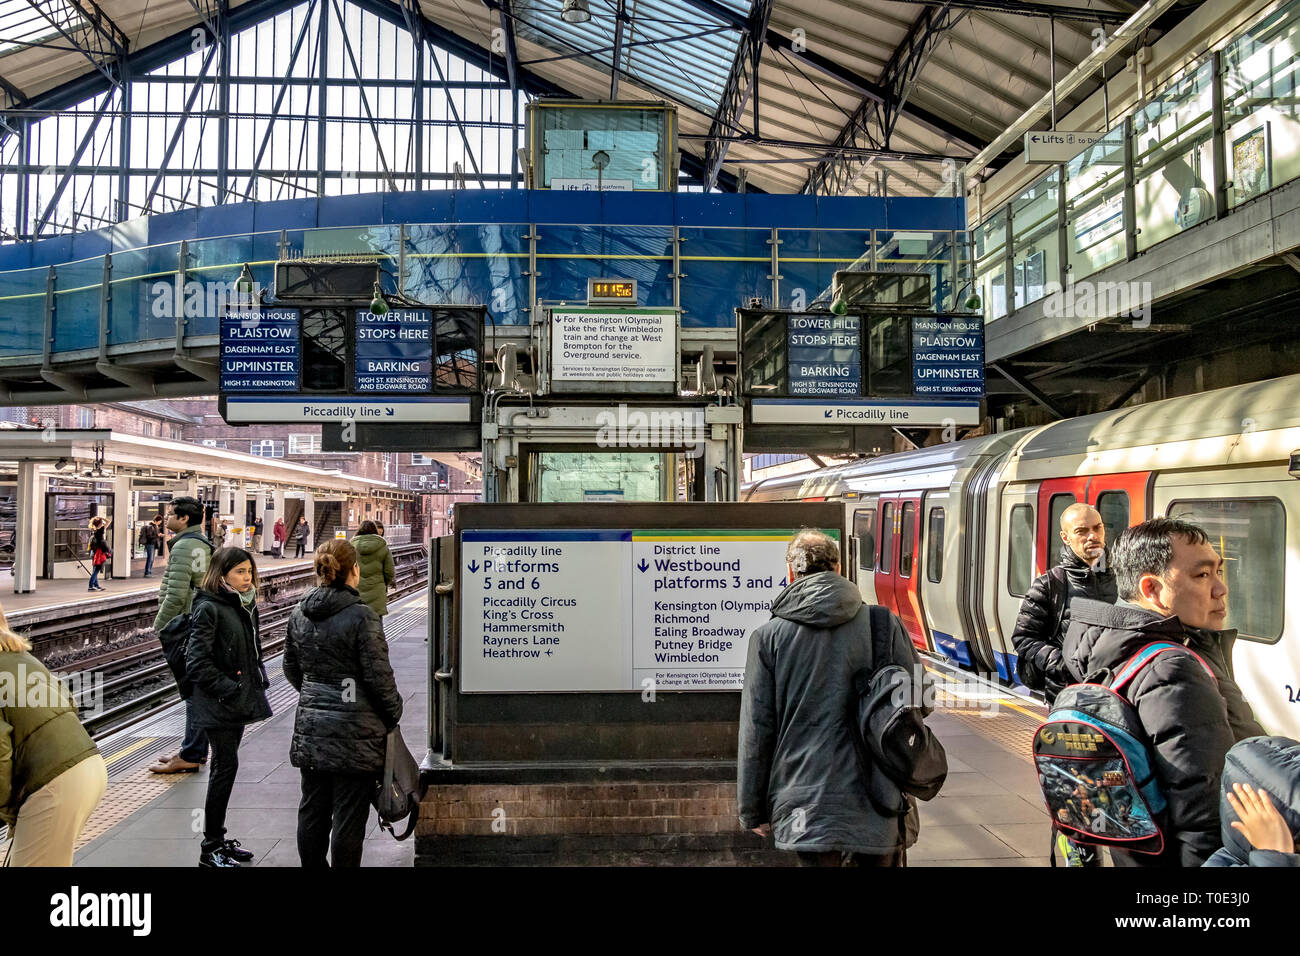 Personnes attendant sur la plate-forme pour un train District Line à la station de métro Earls court , Londres, Royaume-Uni Banque D'Images